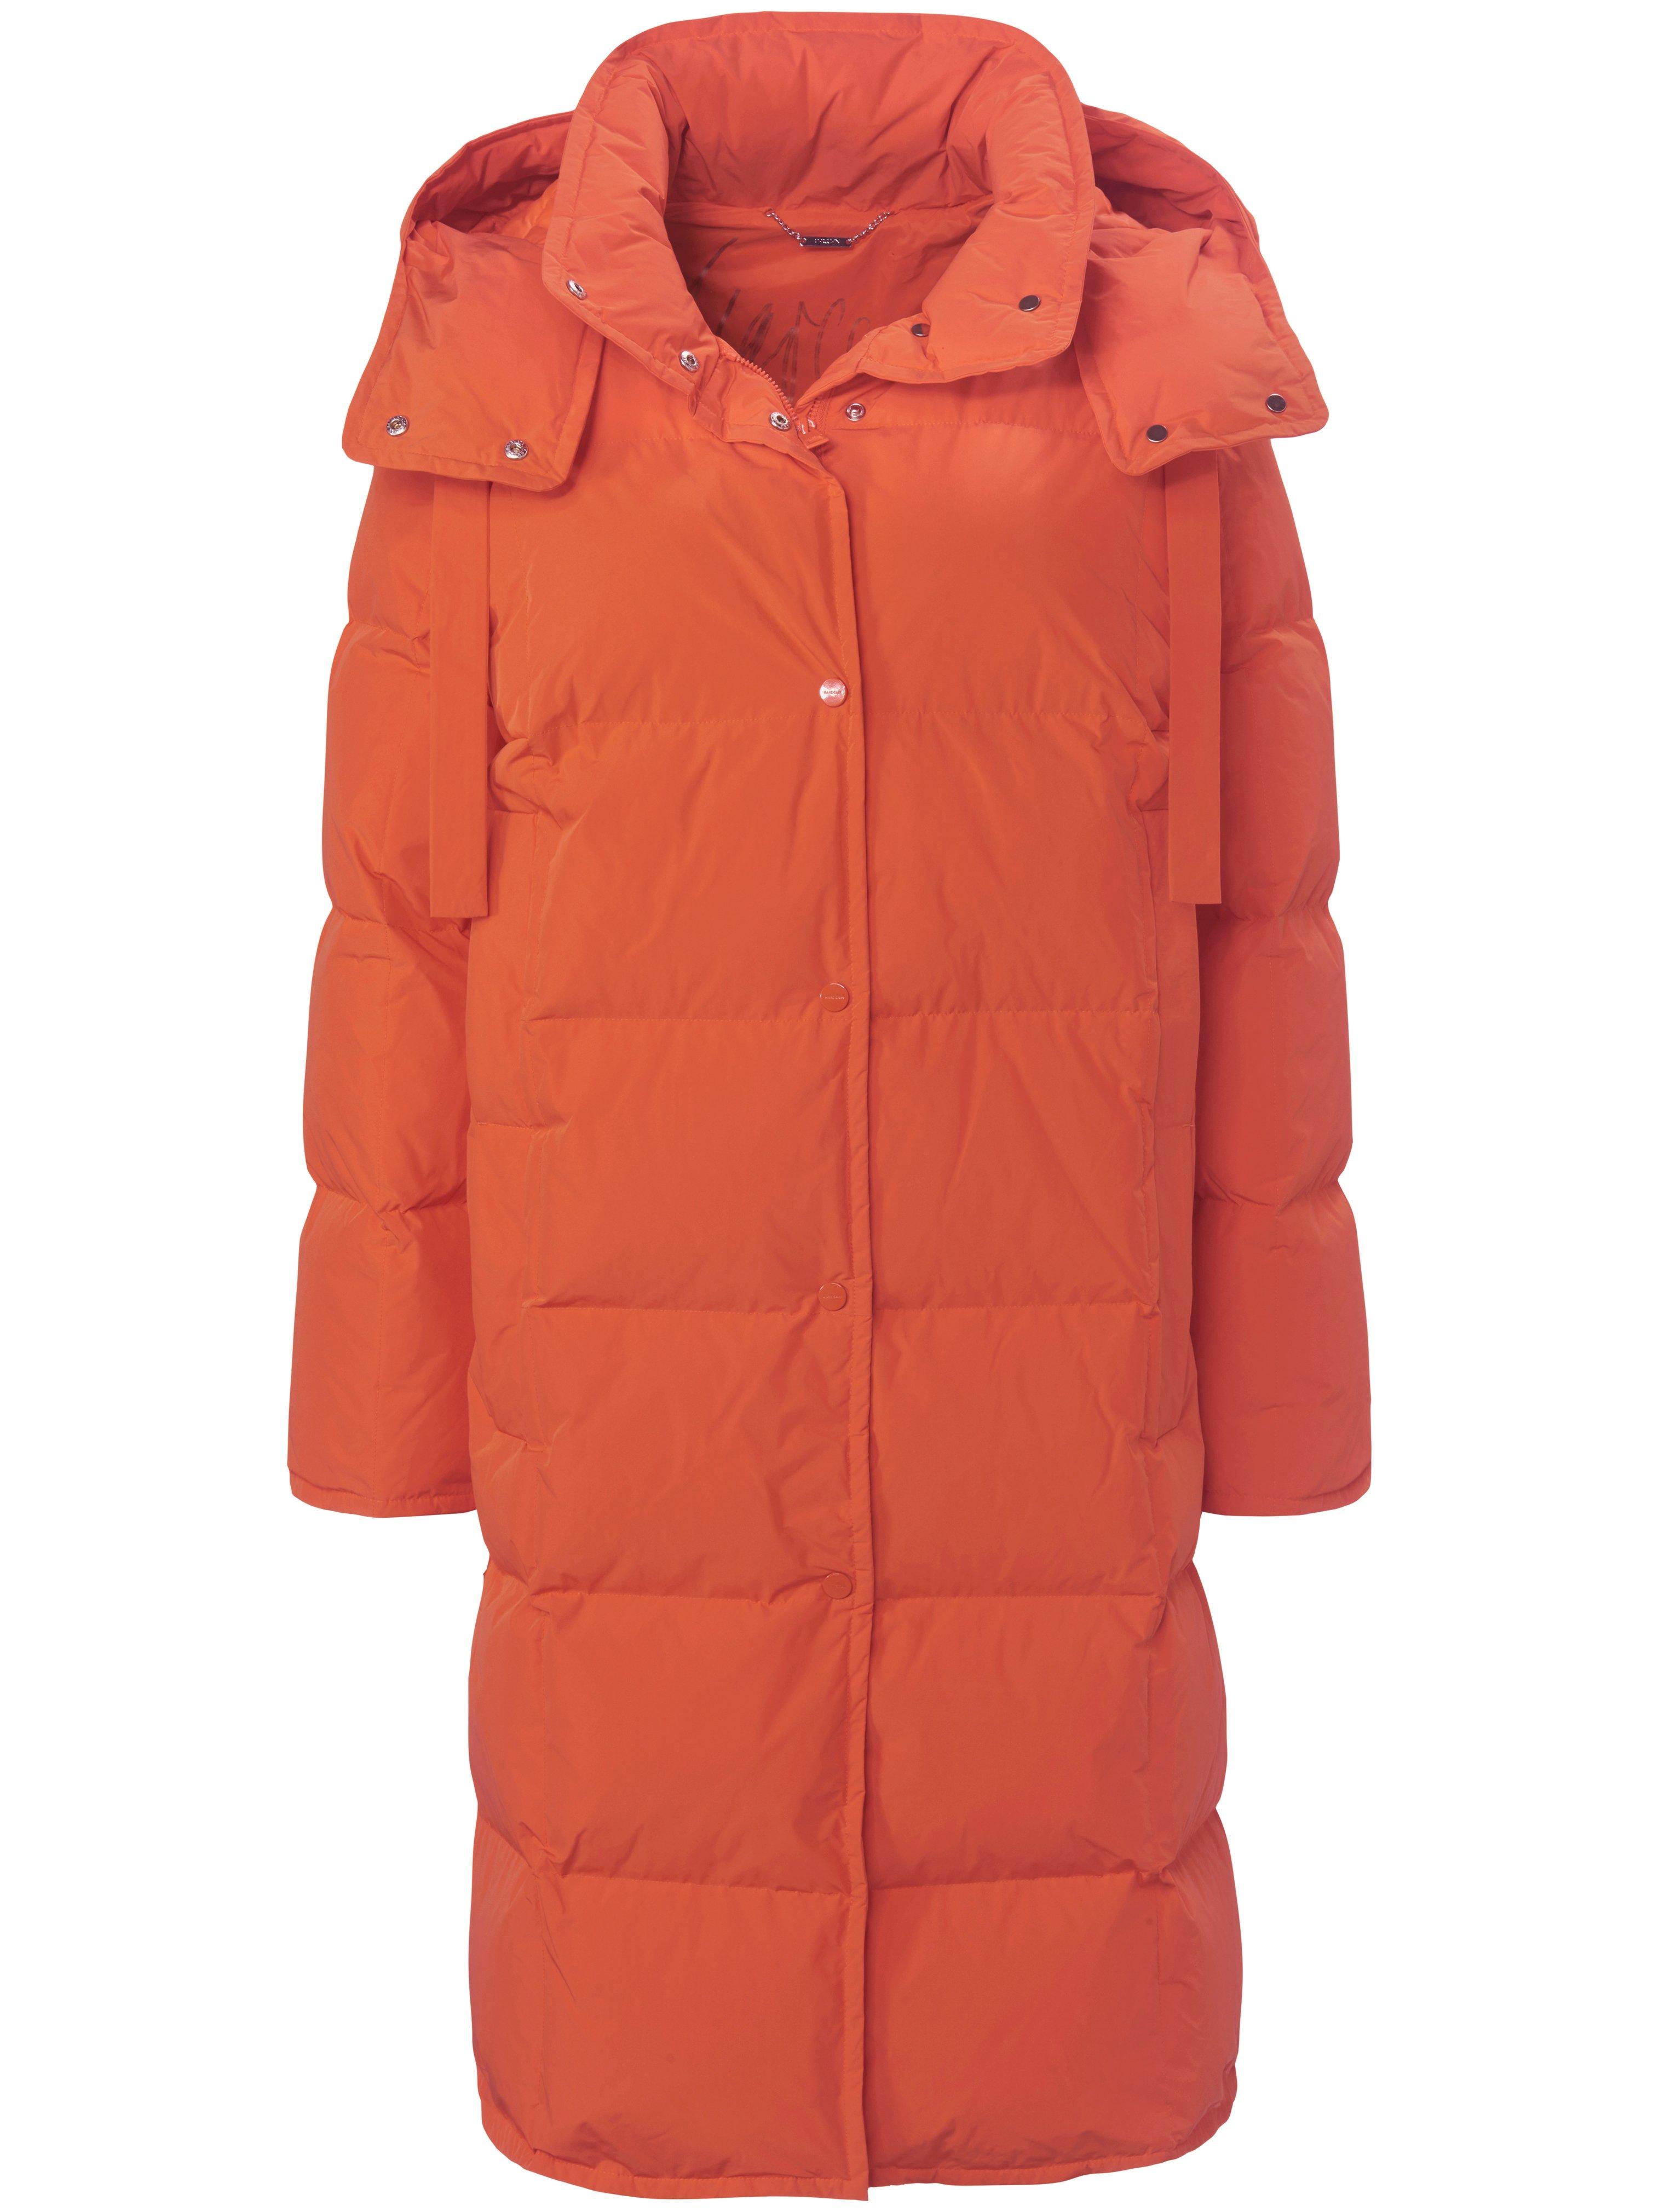 Le manteau doudoune avec capuche  Marc Cain orange